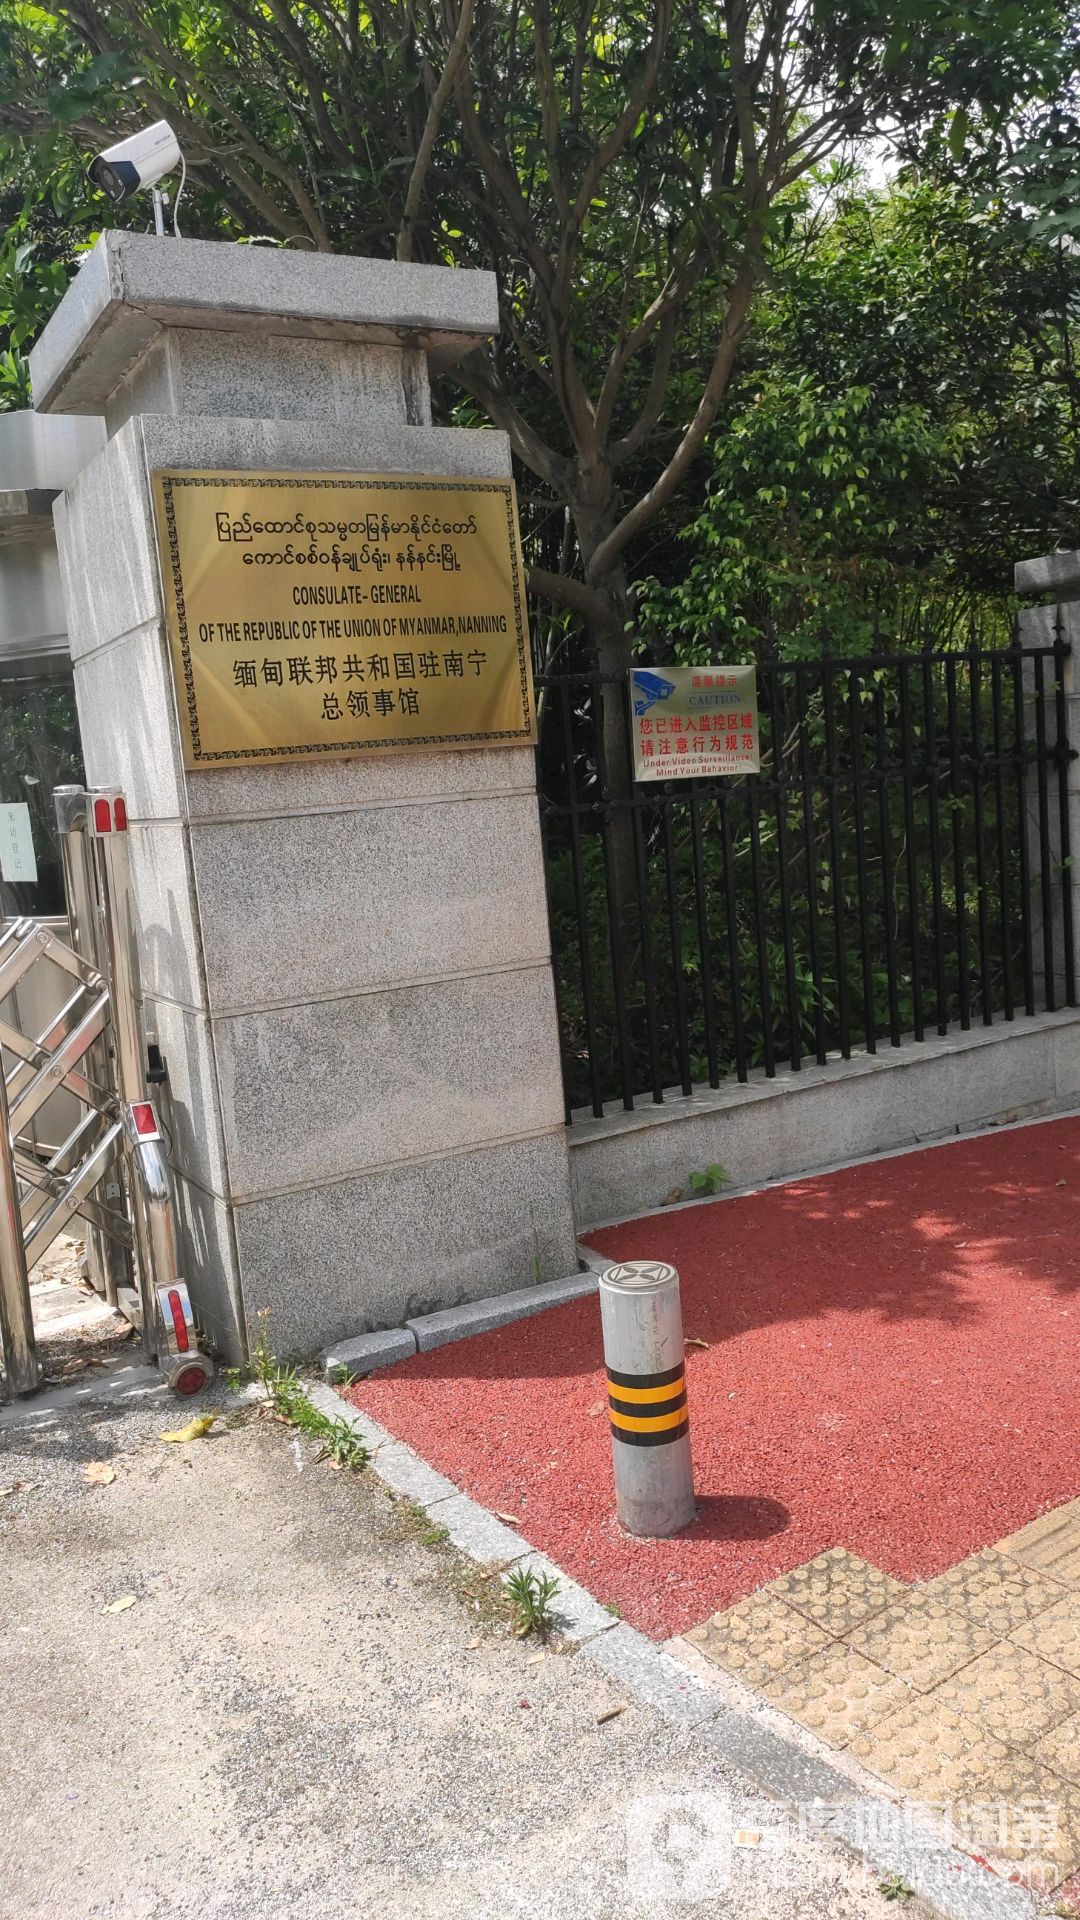 缅甸联邦共和国驻南宁总领事馆